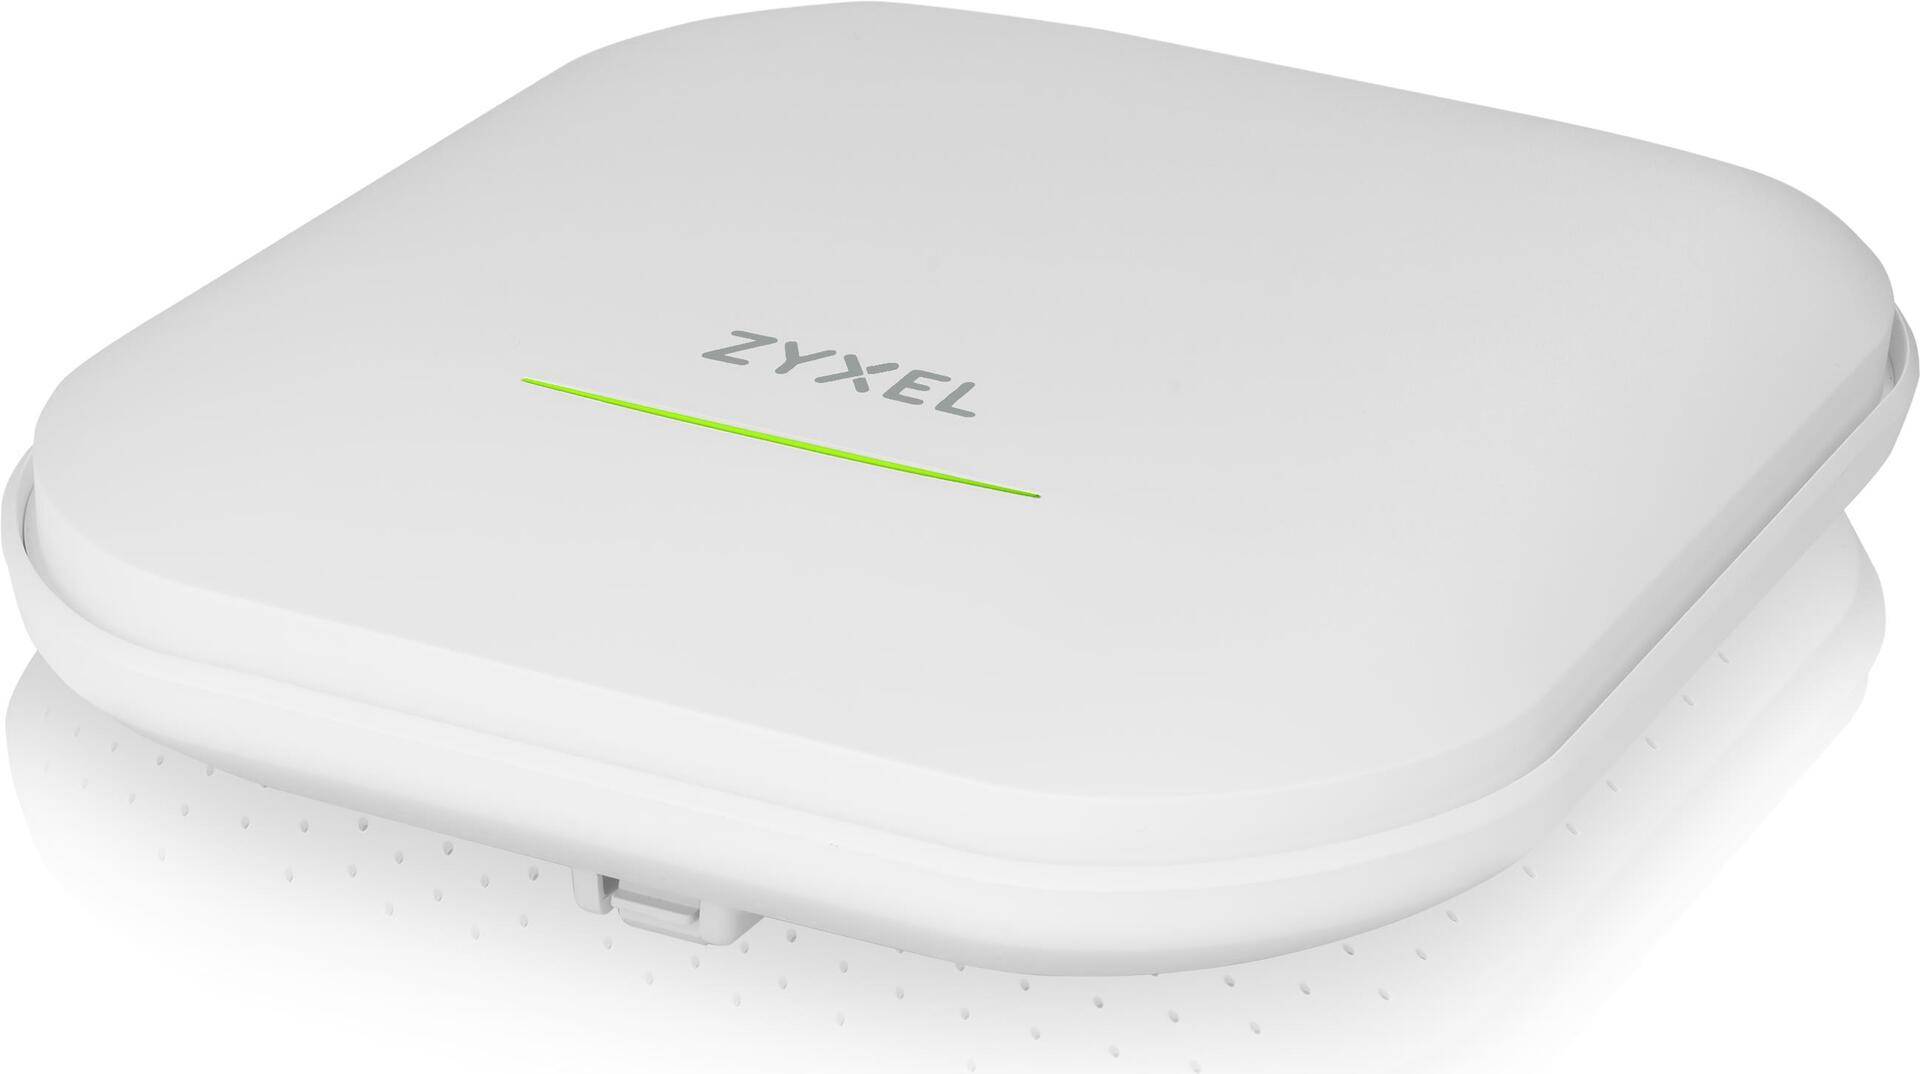 Zyxel WAX620D-6E - Accesspoint - Wi-Fi 6 - 2.4 GHz, 5 GHz, 6 GHz - Cloud-verwaltet von Zyxel